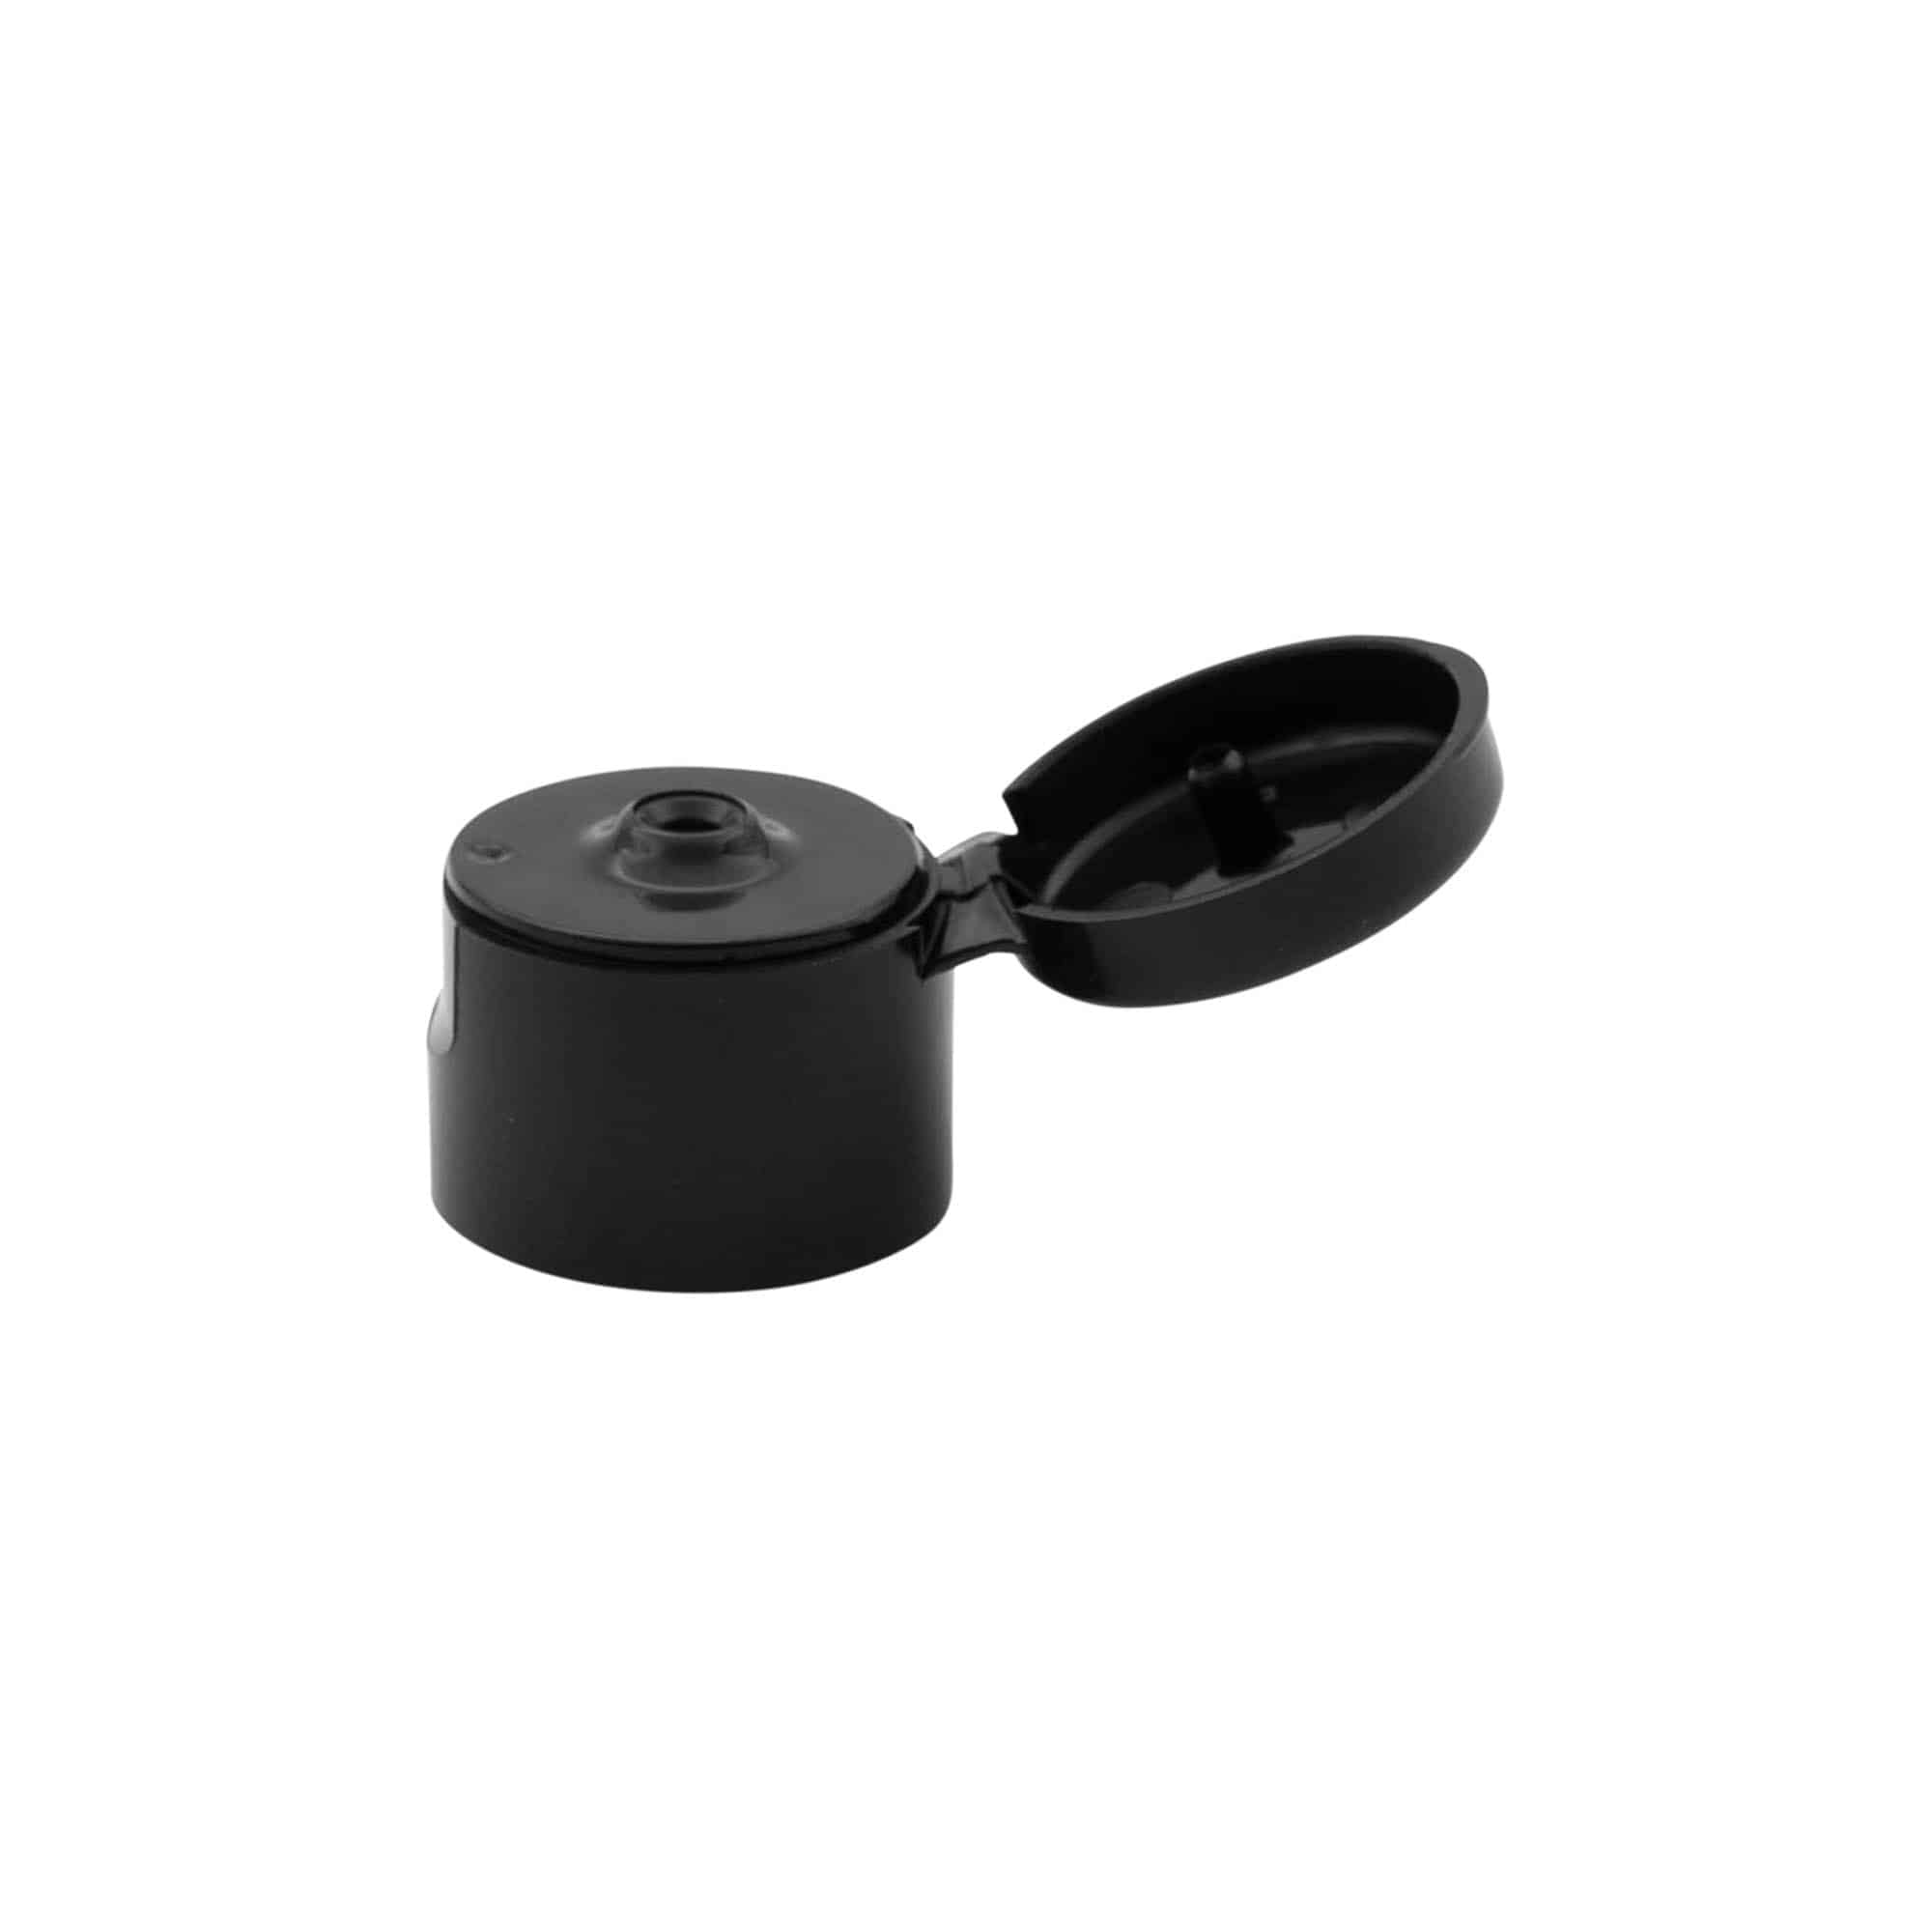 Schraubverschluss Klappscharnier, PP-Kunststoff, schwarz, für Mündung: GPI 20/410